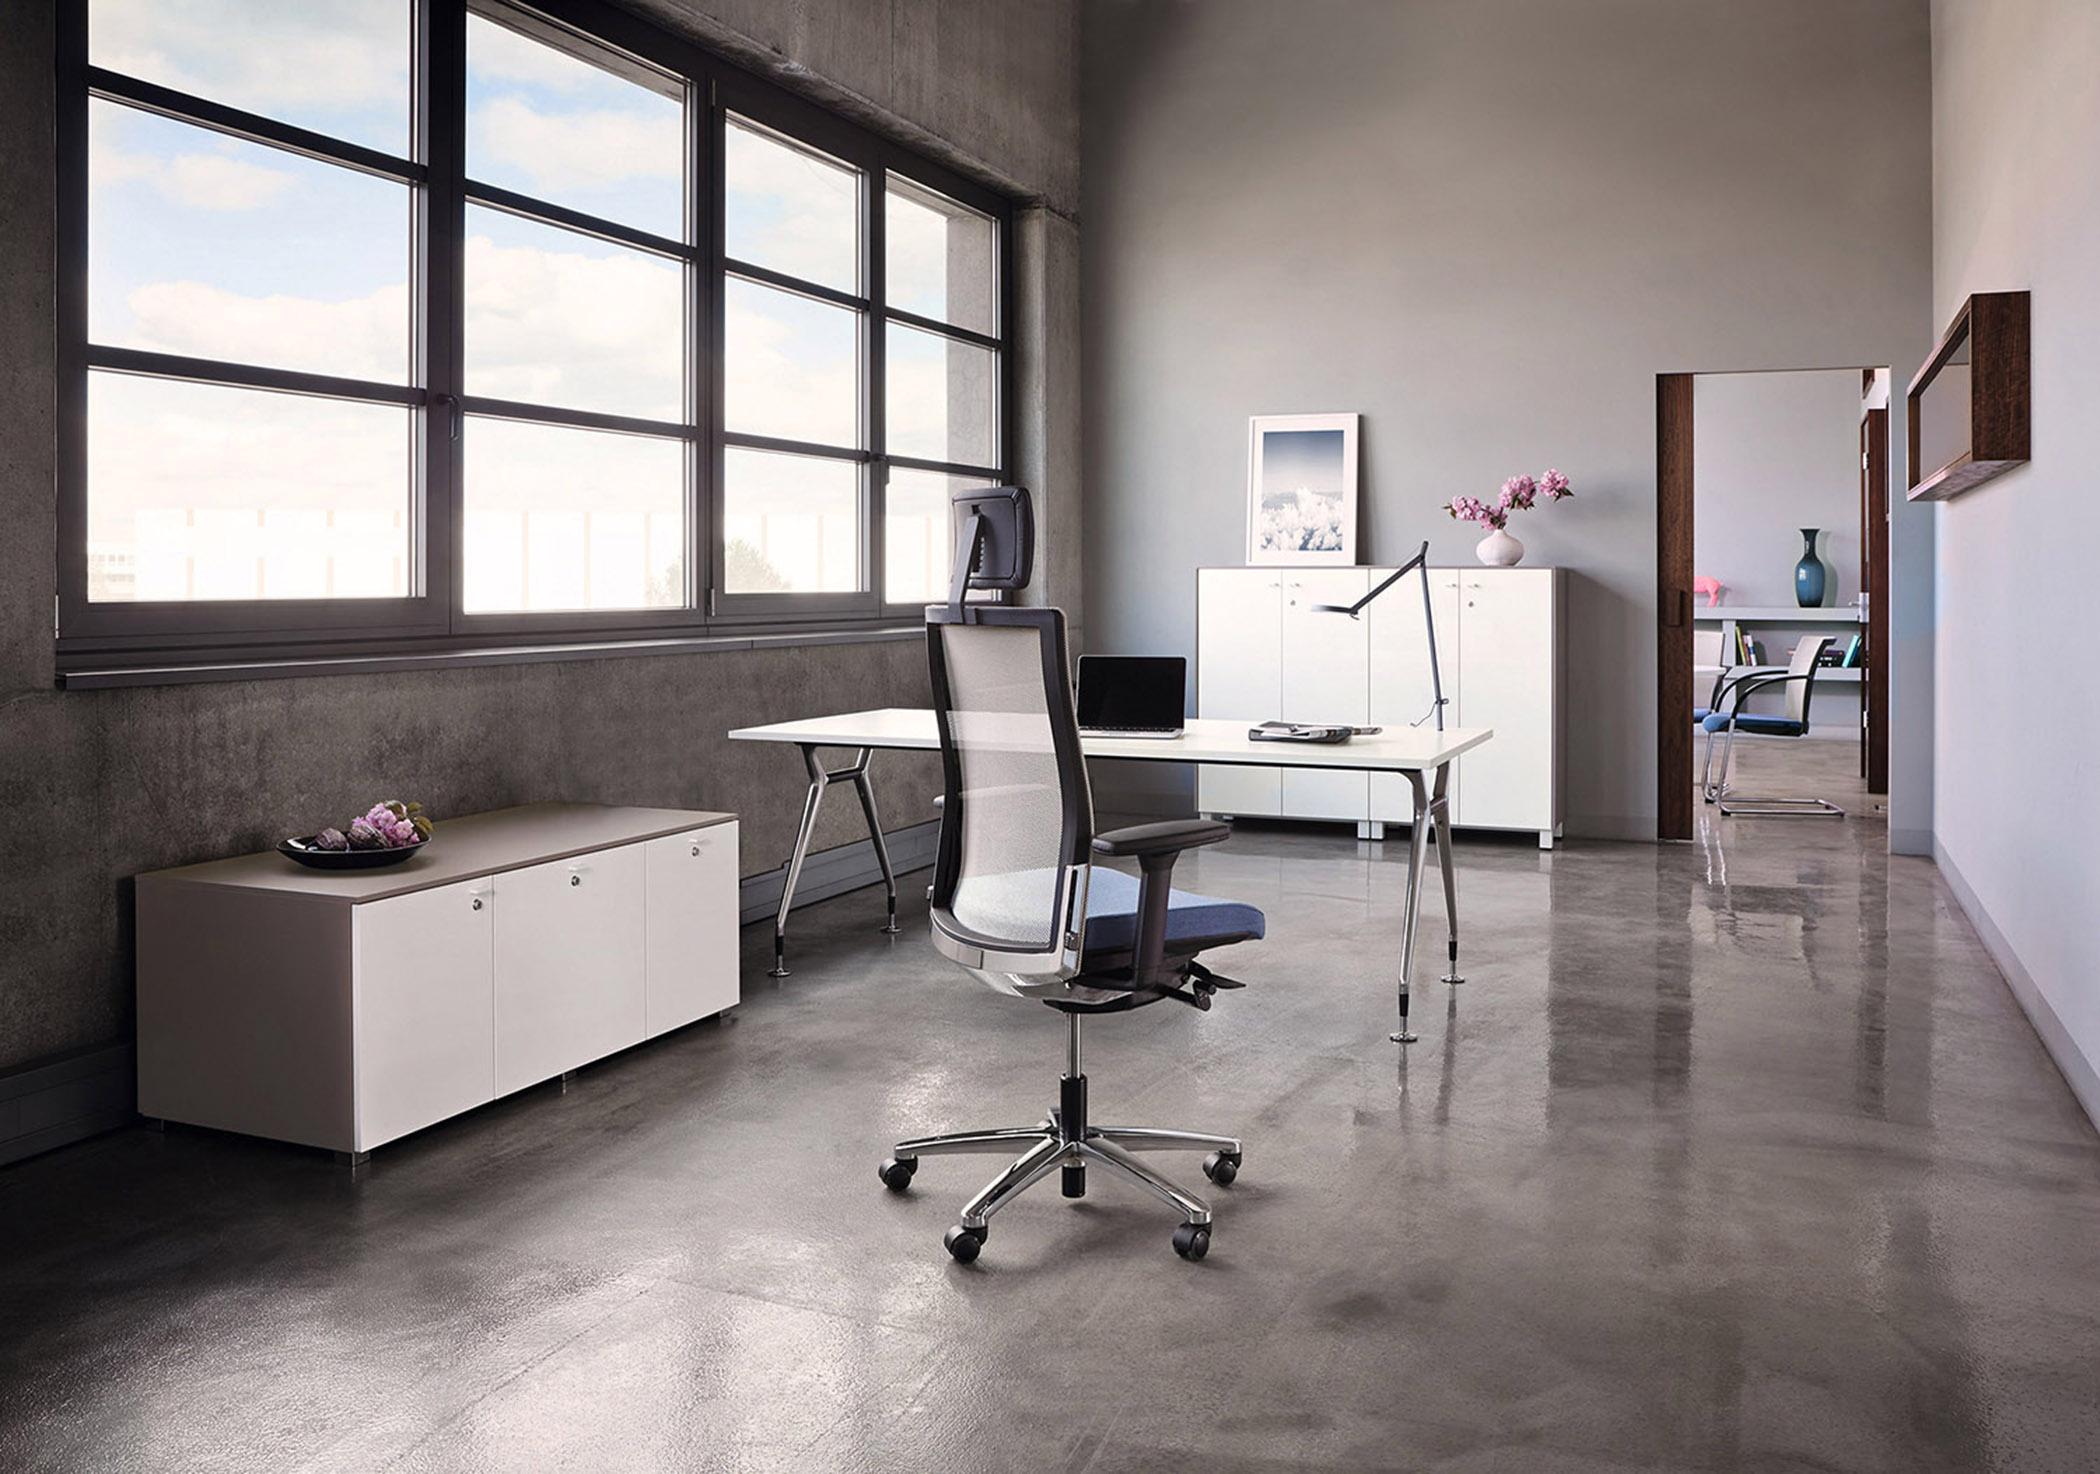 Minimalistisches Büro mit Loftatmosphäre #betonboden #bürostuhl #schreibtisch #betonwand #schrank #sideboard #minimalismus #tischlampe #zimmergestaltung ©König+Neurath